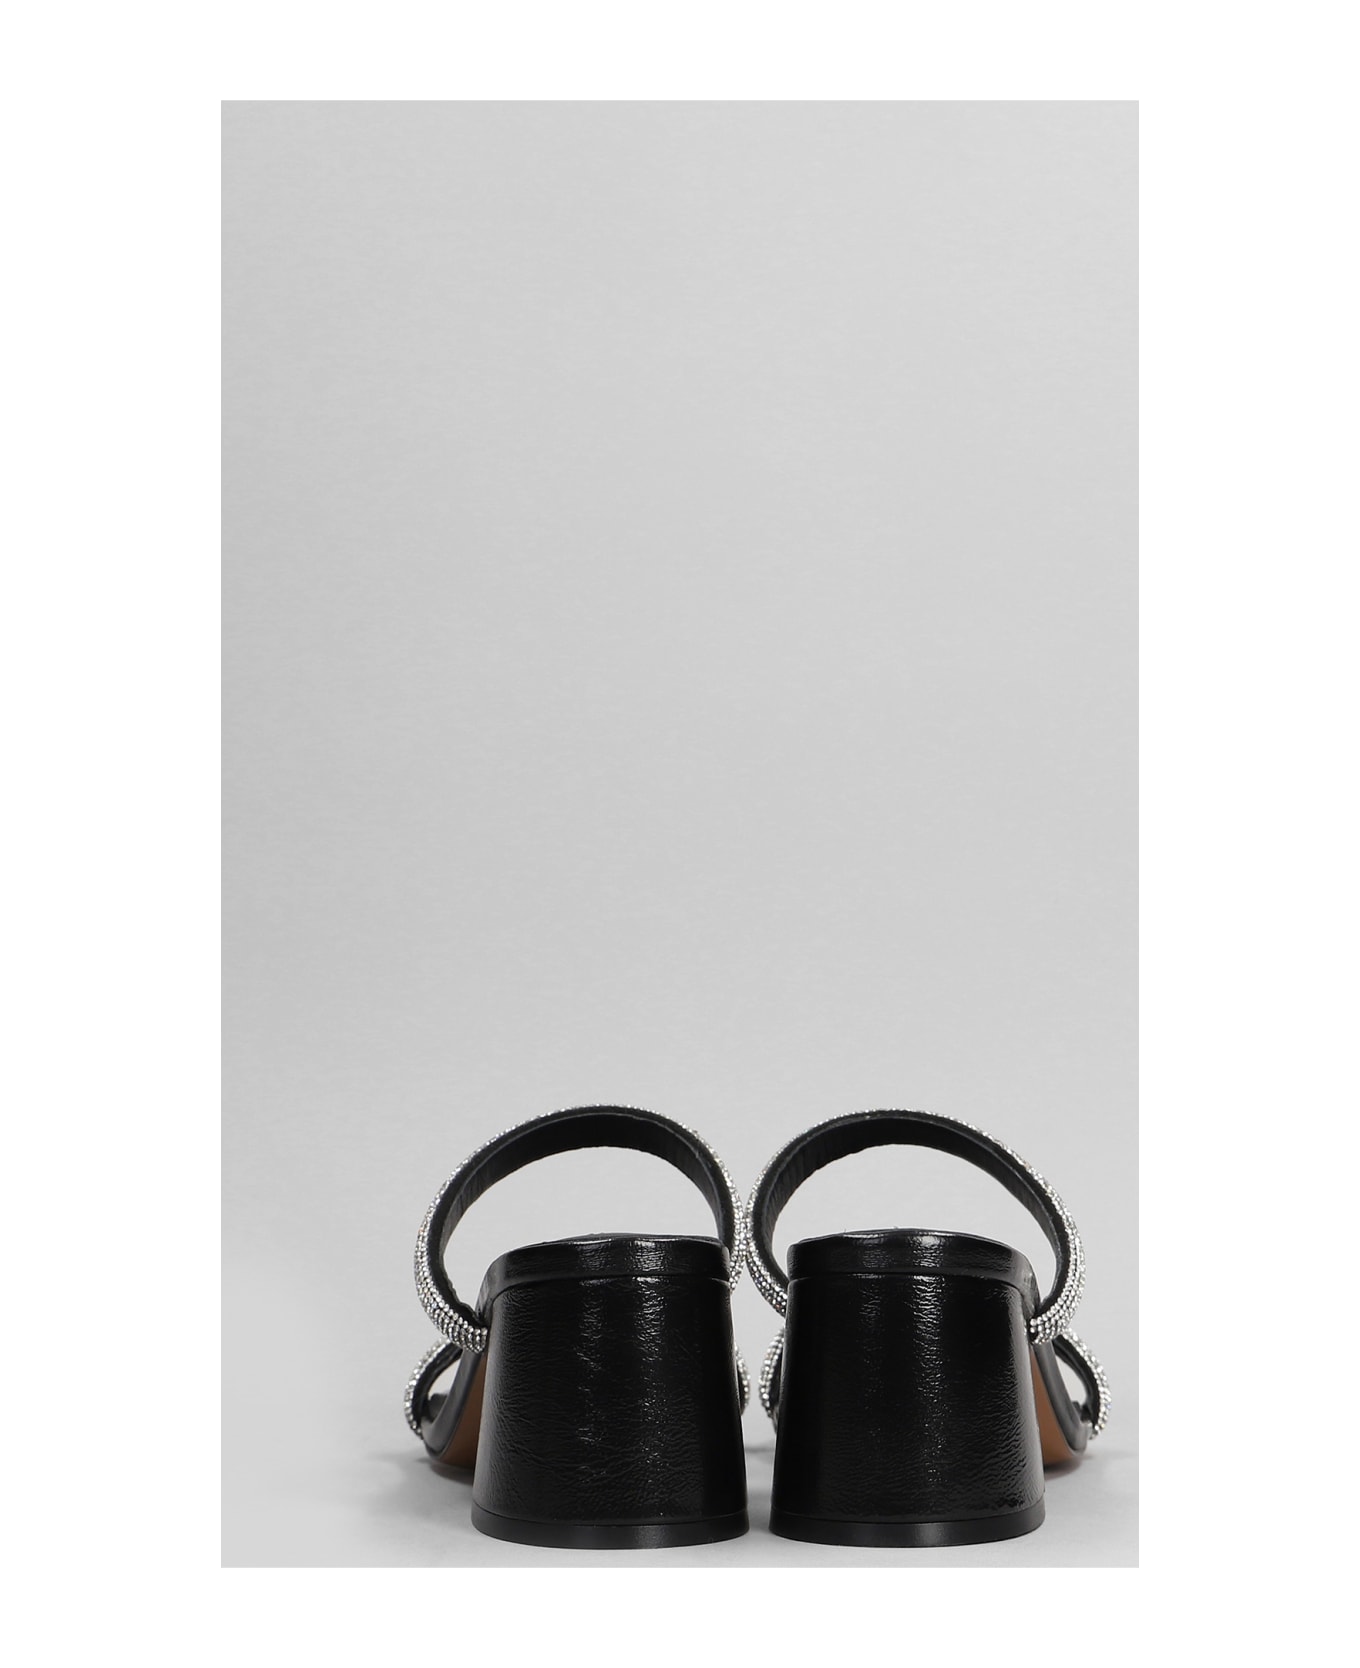 Bibi Lou Heater 60 Slipper-mule In Black Leather - black